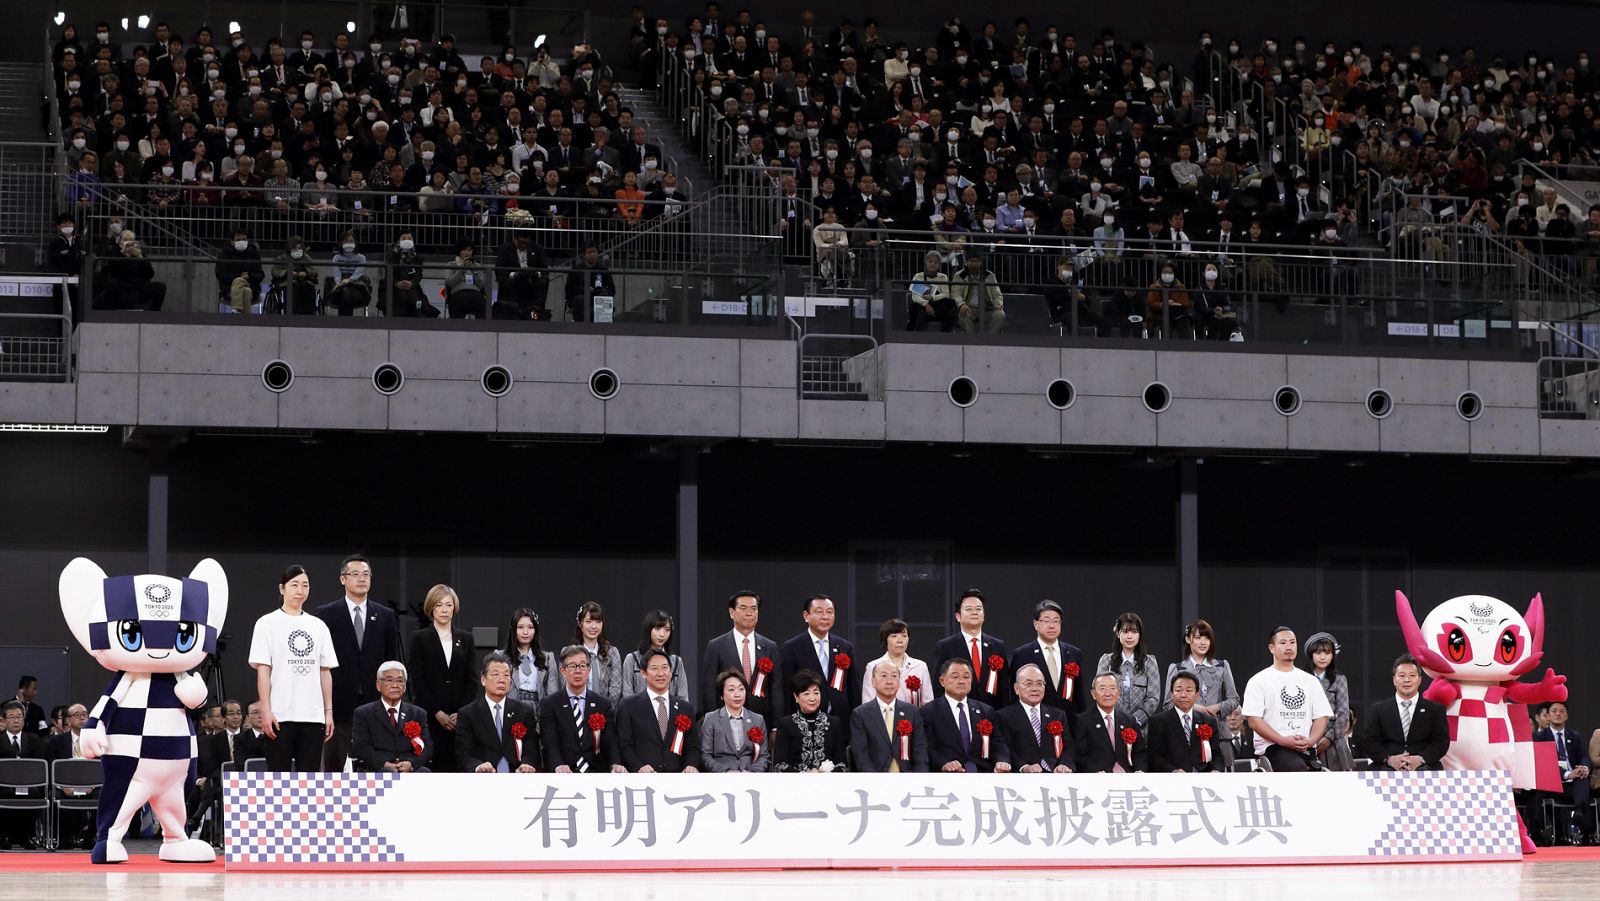 Imagen de la inauguración del Ariake Arena en Tokyo, sede de la competición de voleibol.